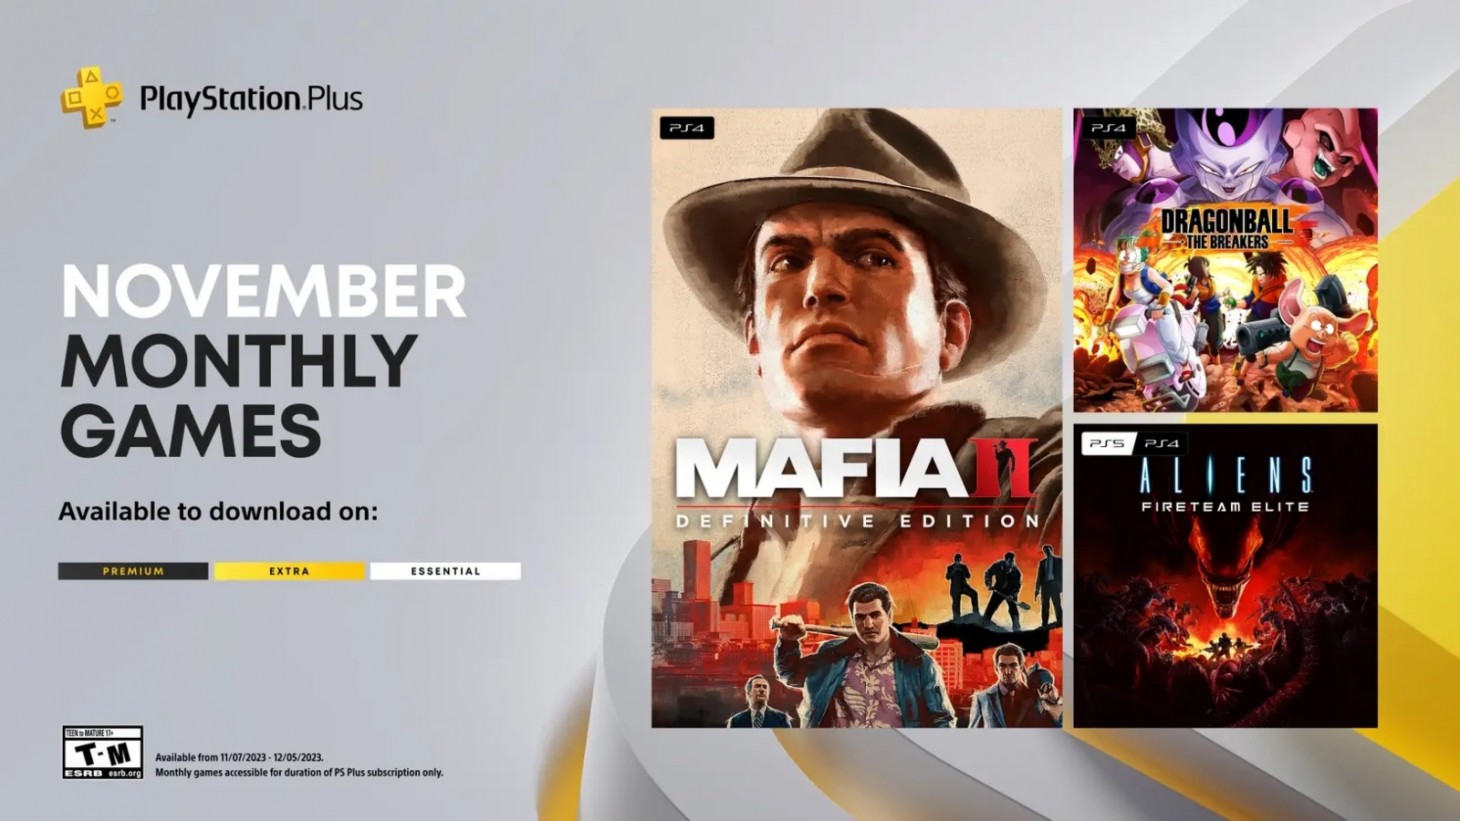 Die monatlichen PlayStation Plus-Spiele für November bieten Mafia, Dragon Ball und Aliens